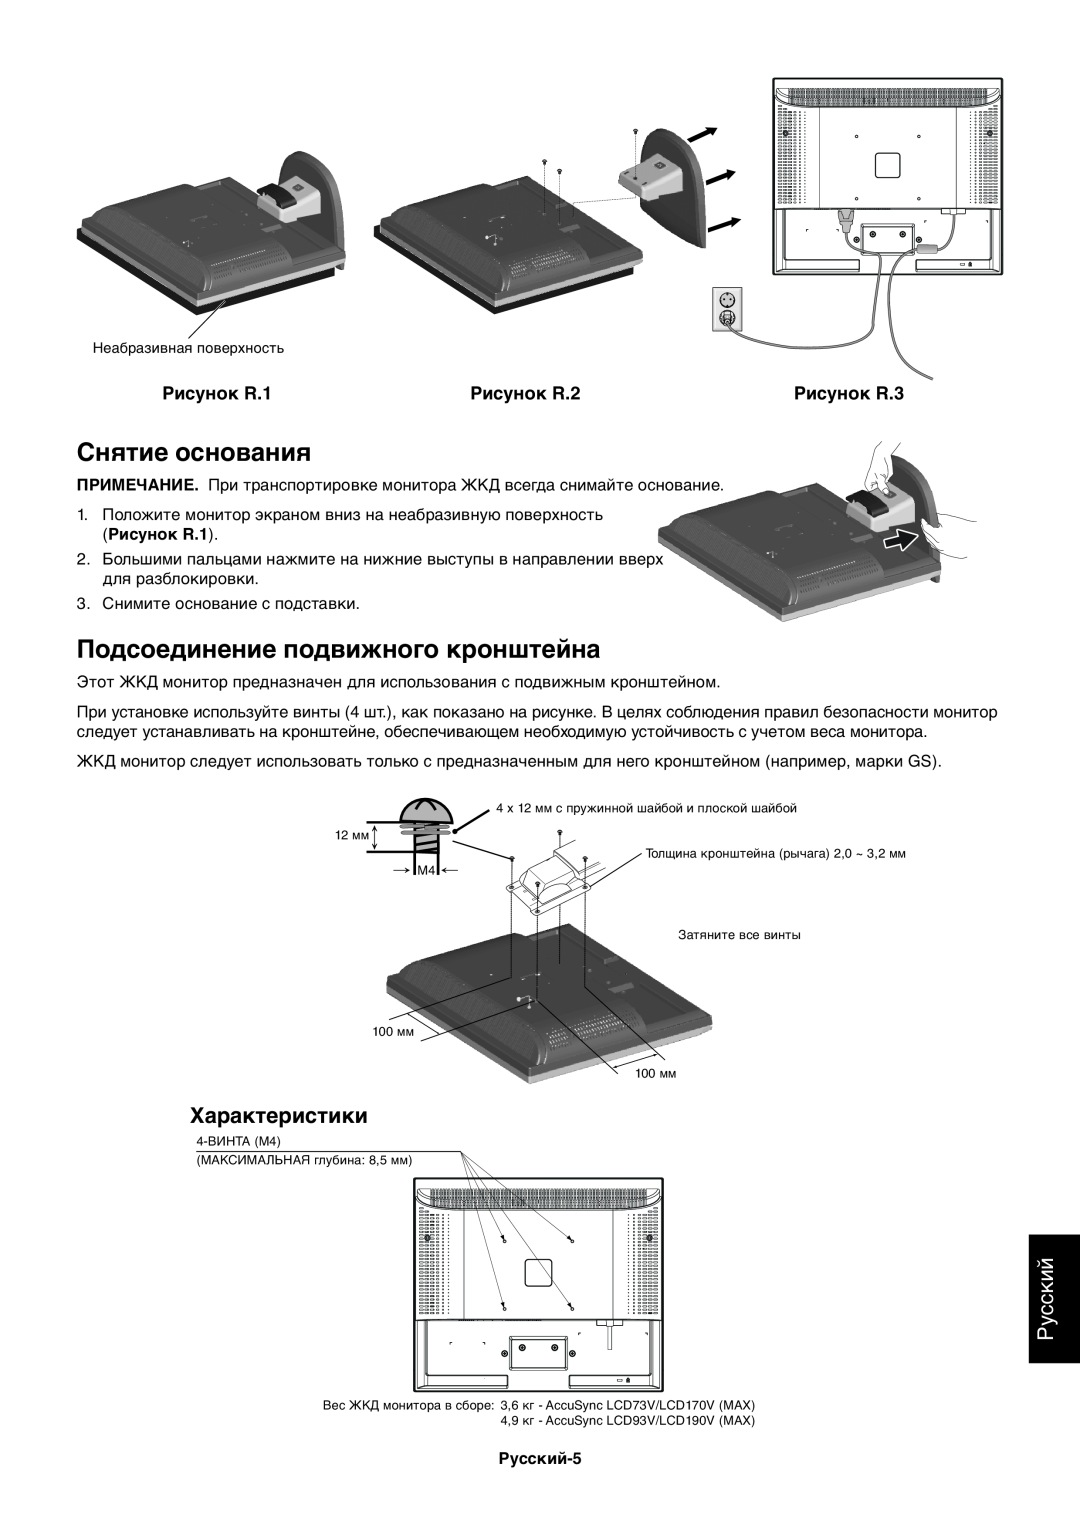 NEC ACCUSYNC LCD73V Снятие основания, Подсоединение подвижного кронштейна, Русский, Рисунок R.1, Рисунок R.2, Рисунок R.3 